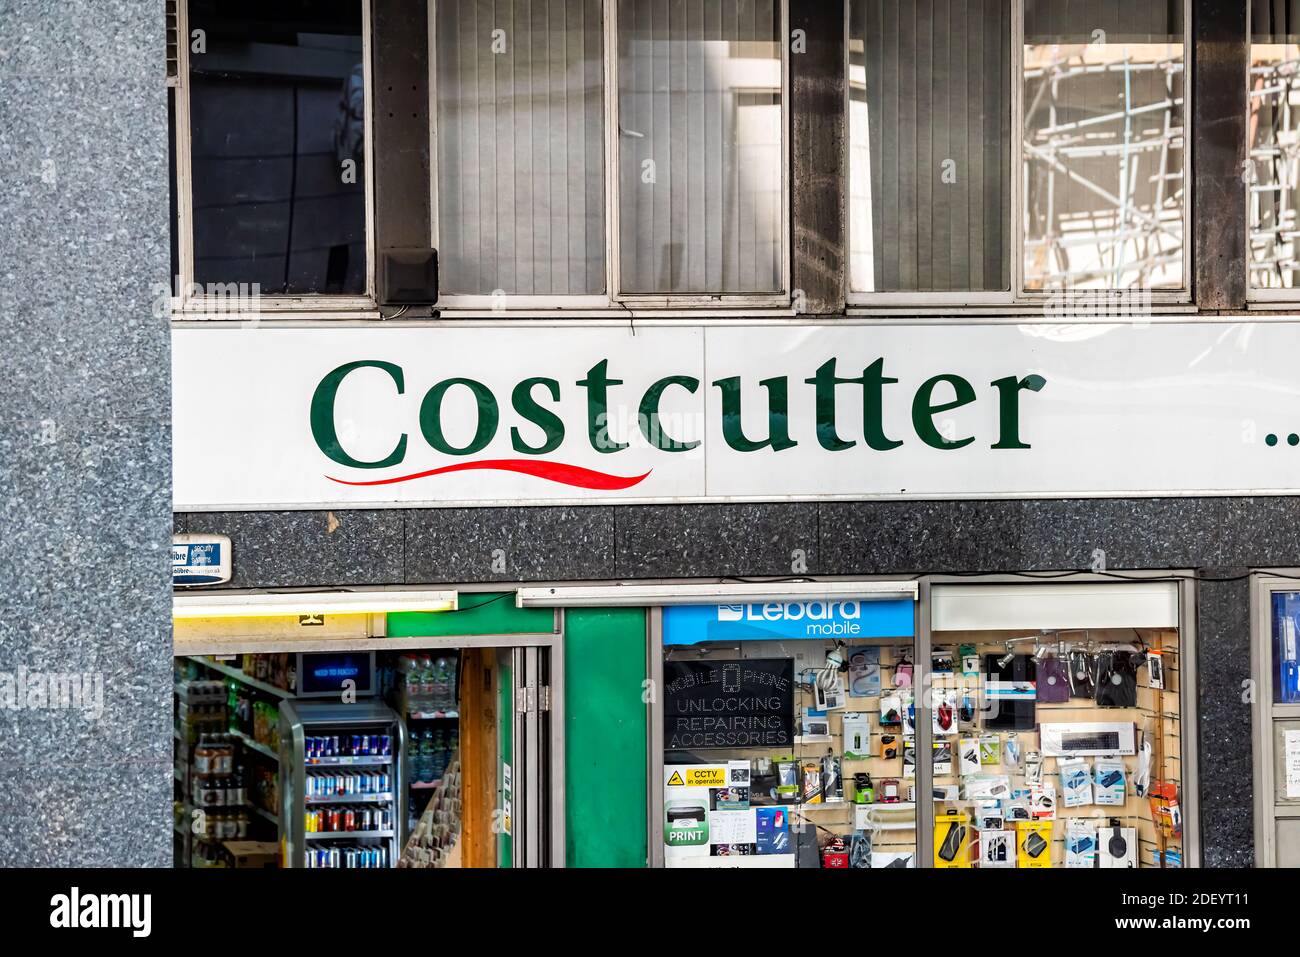 Londres, Royaume-Uni - 22 juin 2018: Quartier magasin local Costcutter épicerie magasin façade entrée extérieure avec panneau et entrée Banque D'Images